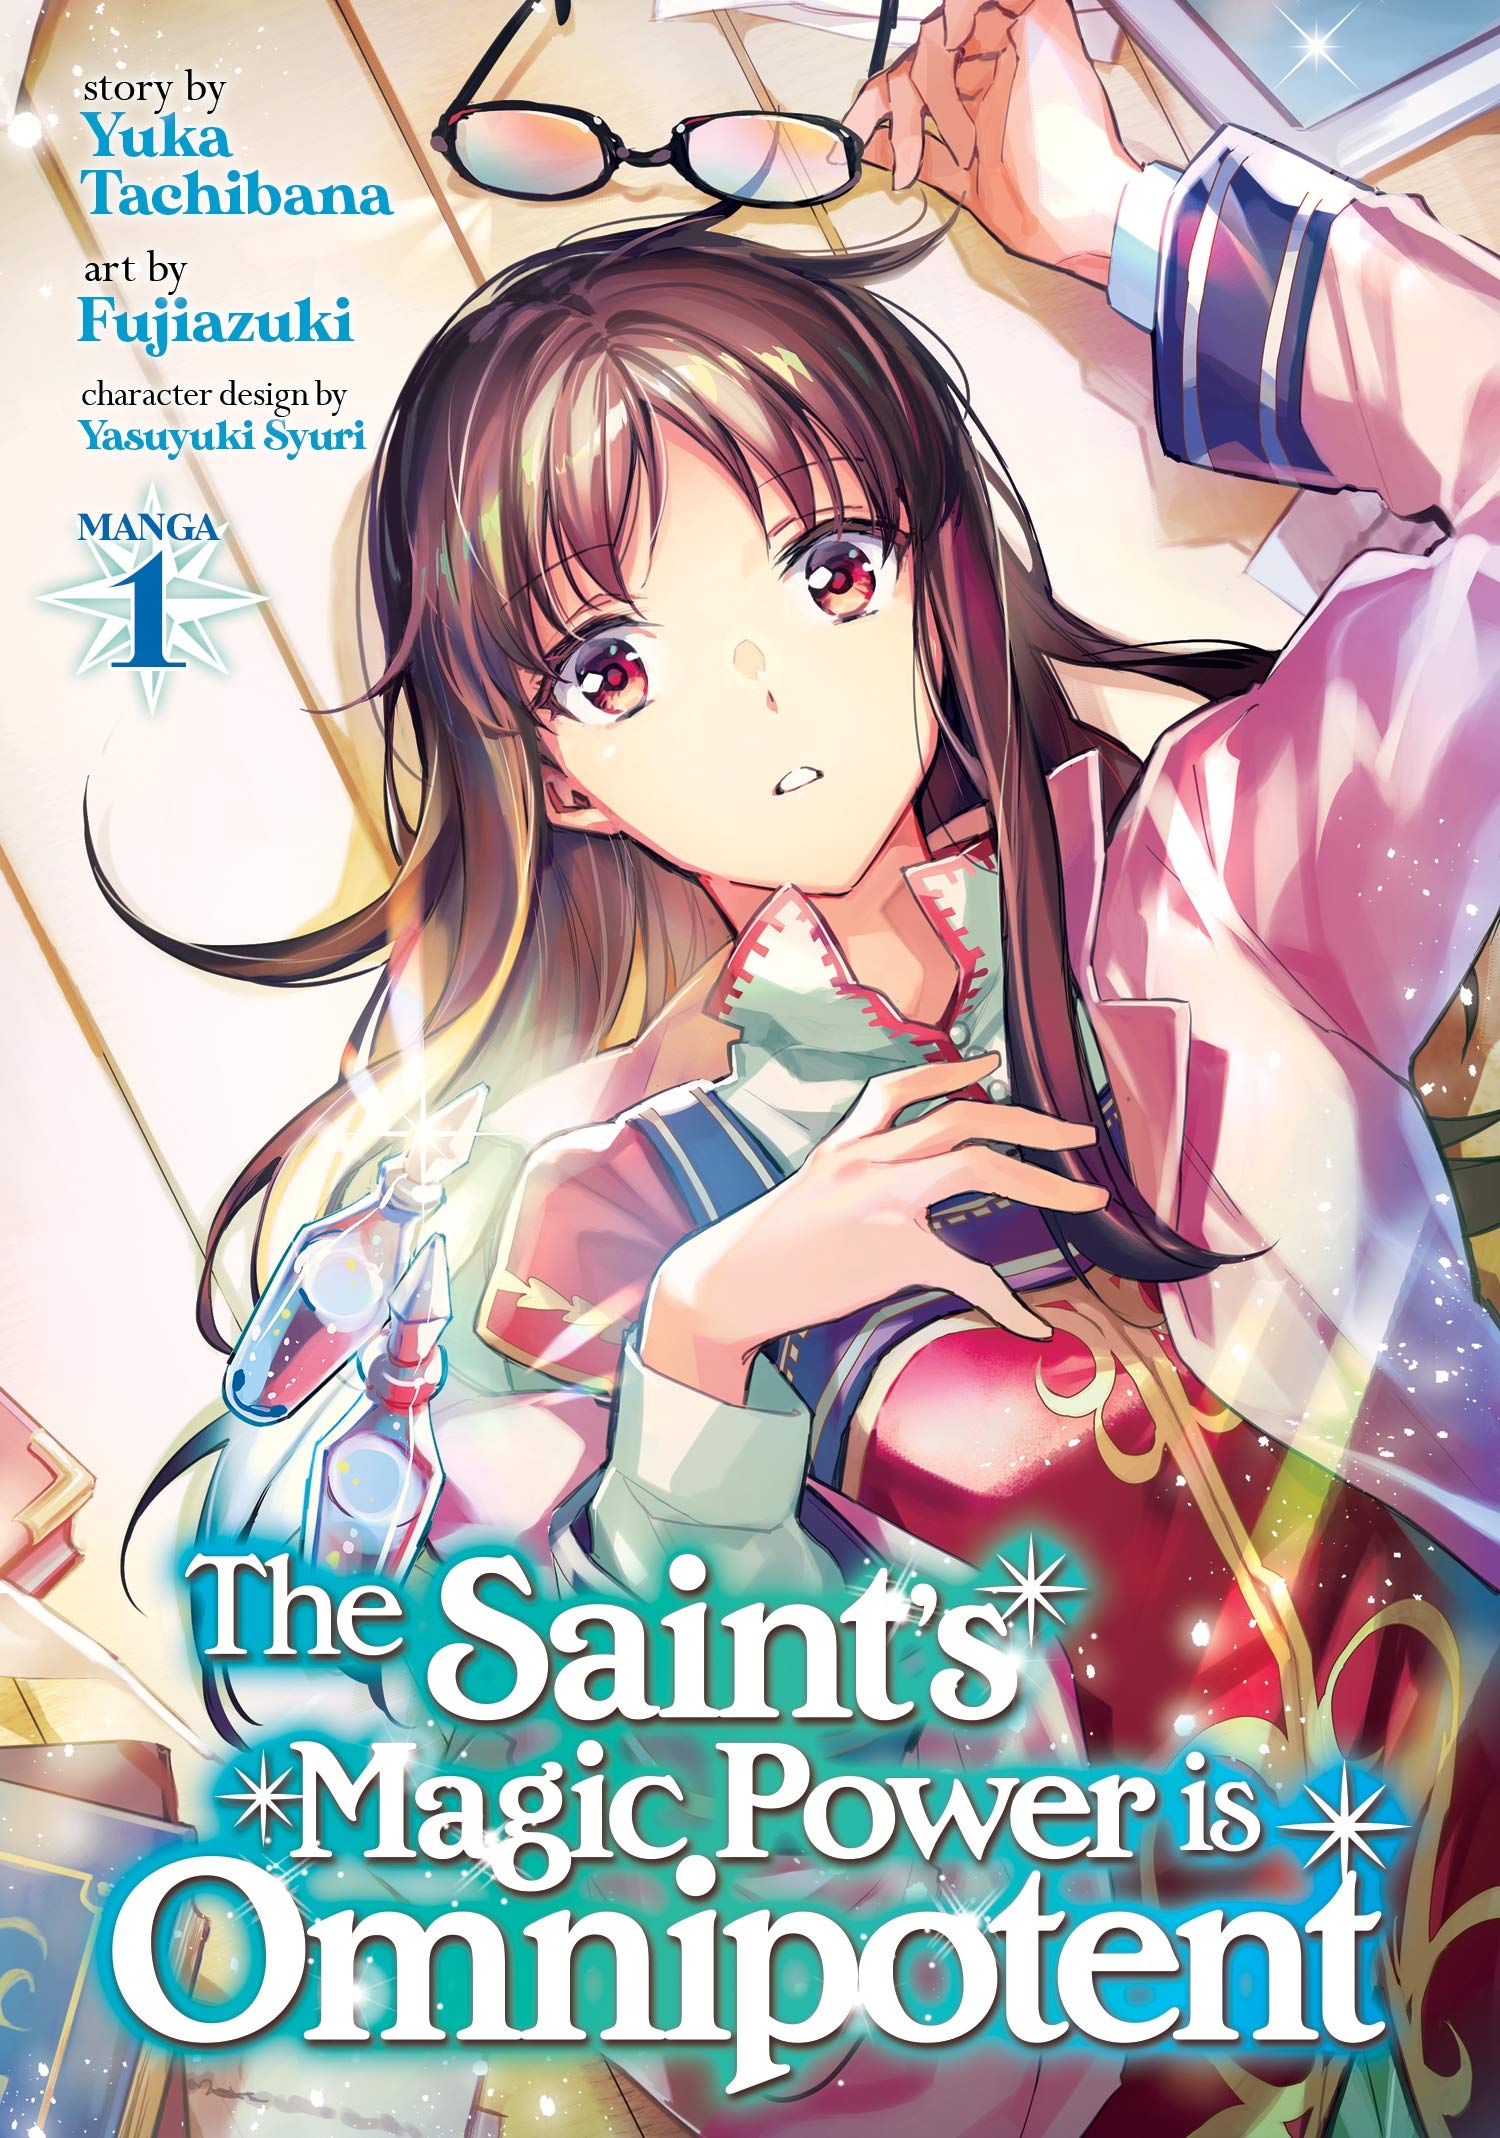 The Saint's Magic Power is Omnipotent (Manga) Vol. 1 (The Saint's Magic Power is Omnipotent (Manga), 1): Tachibana, Yuka, Fujiazuki: Books